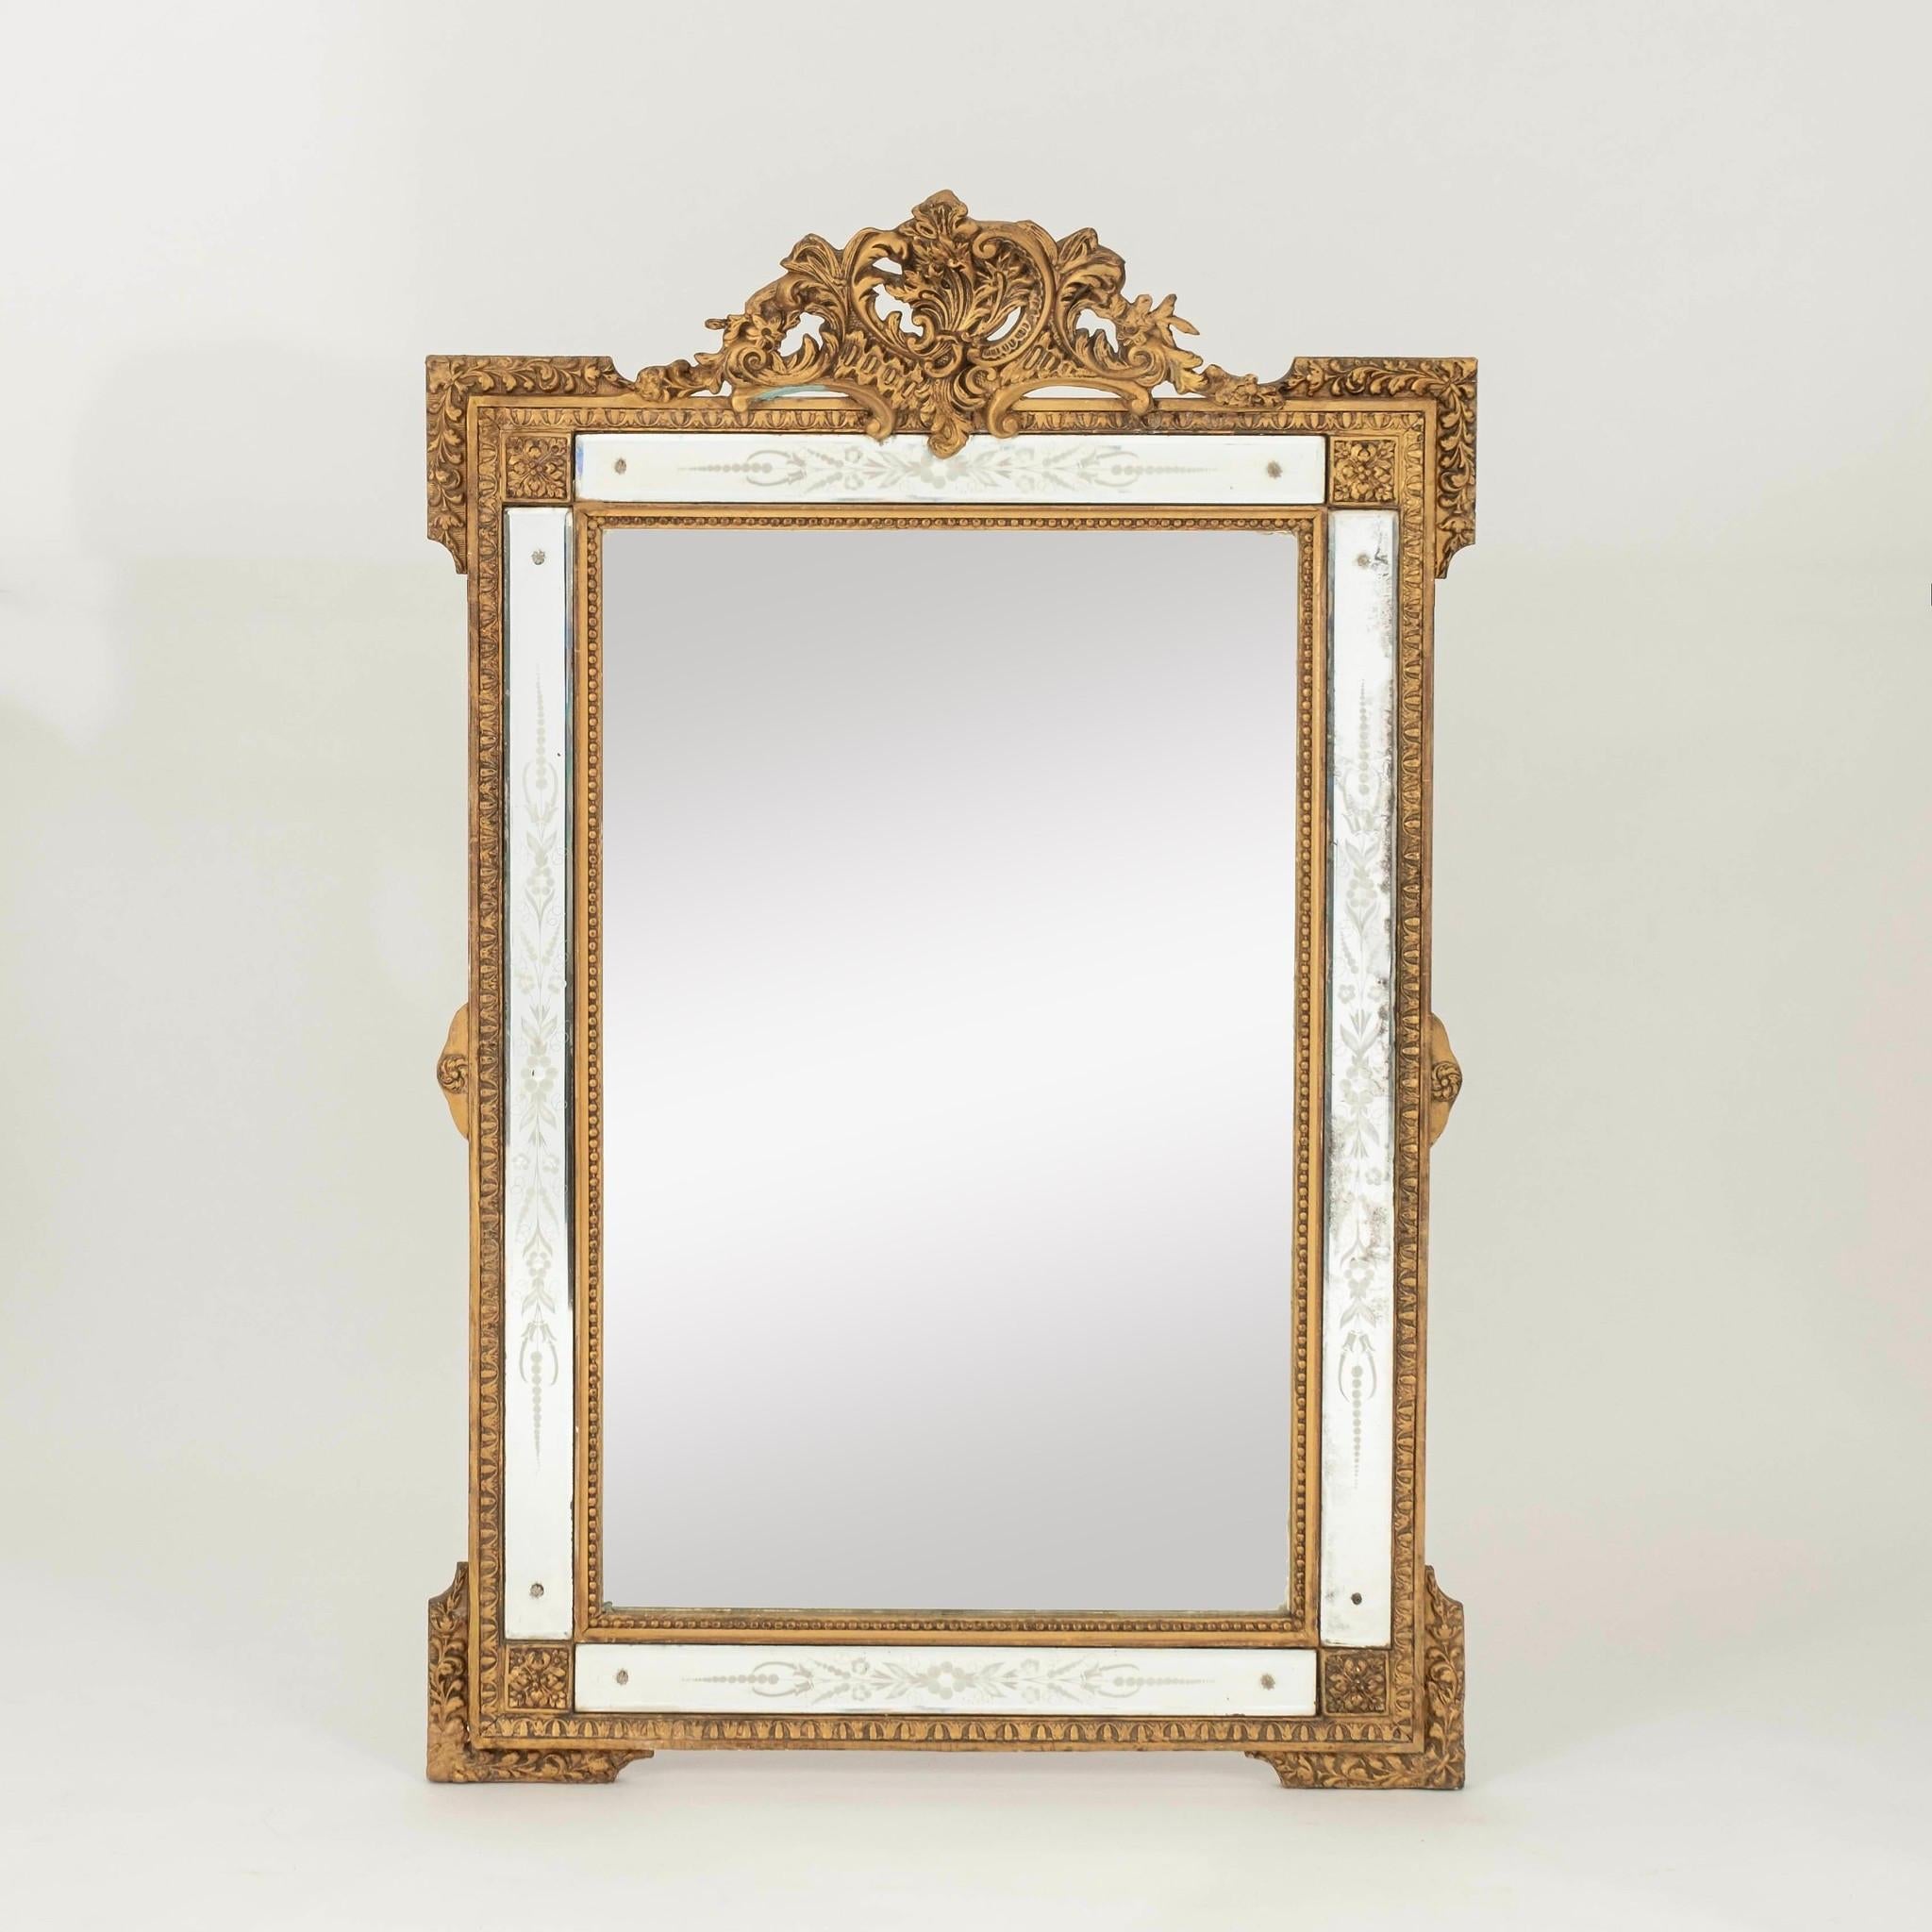 Miroir en bois doré de style Louis XV du 20e siècle ou antérieur, avec des détails floraux et de feuillage gravés à l'eau-forte.